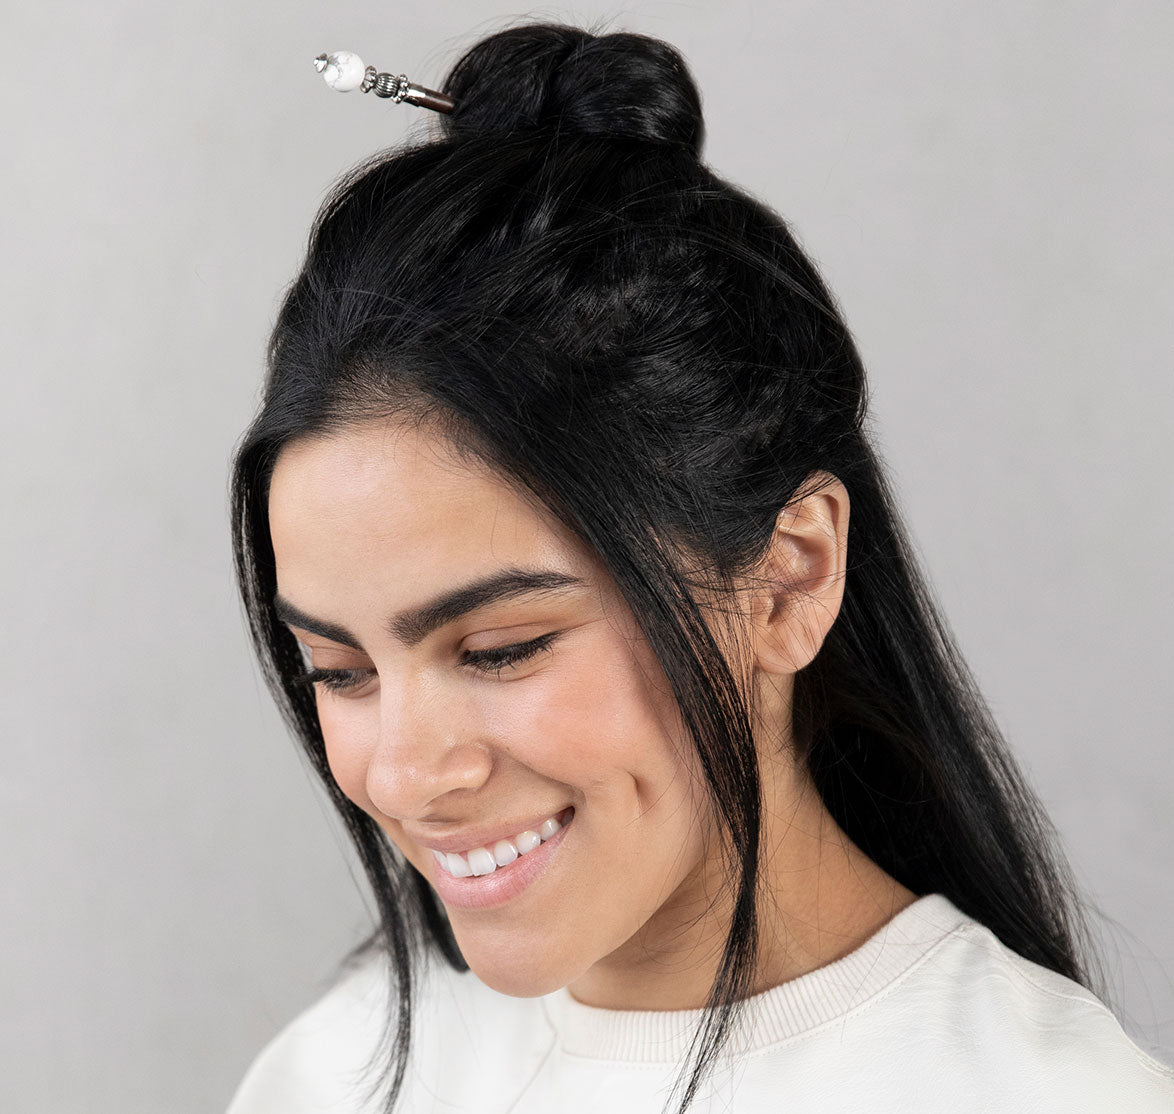 Tabitha hair stick in white shown in hair.